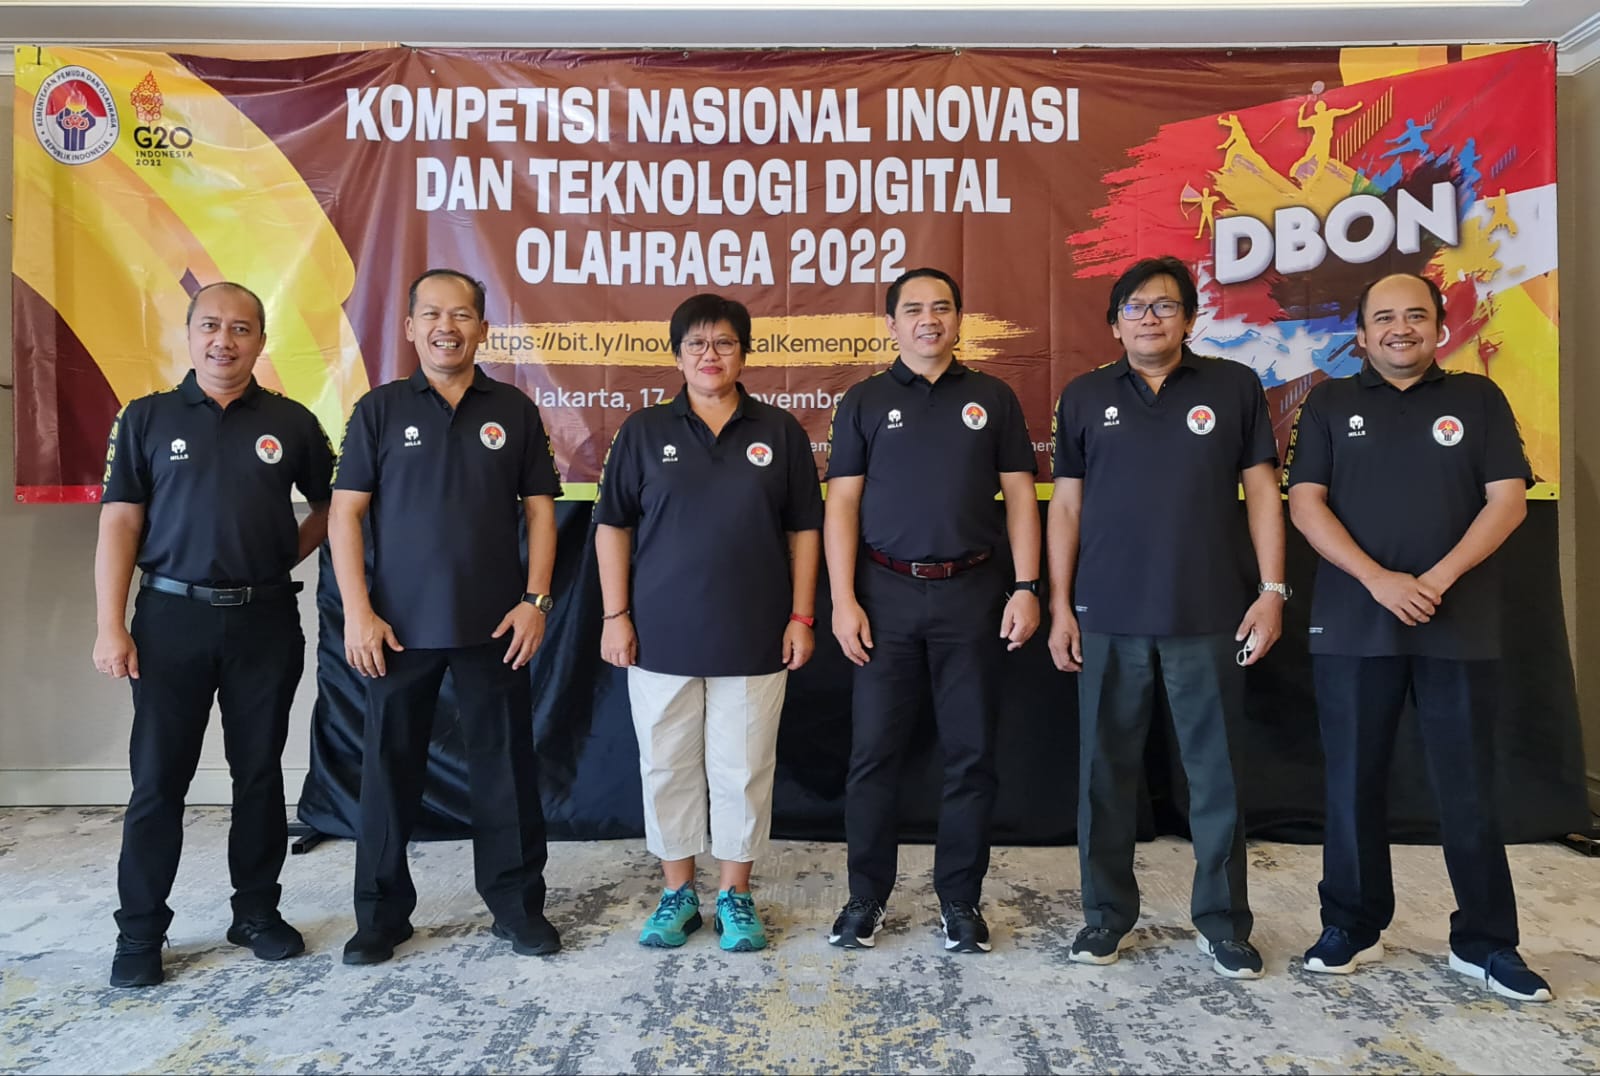 Prof. Agus Rusdiana Menjadi Juri di Kompetisi Inovasi dan Teknologi Digital Indonesia